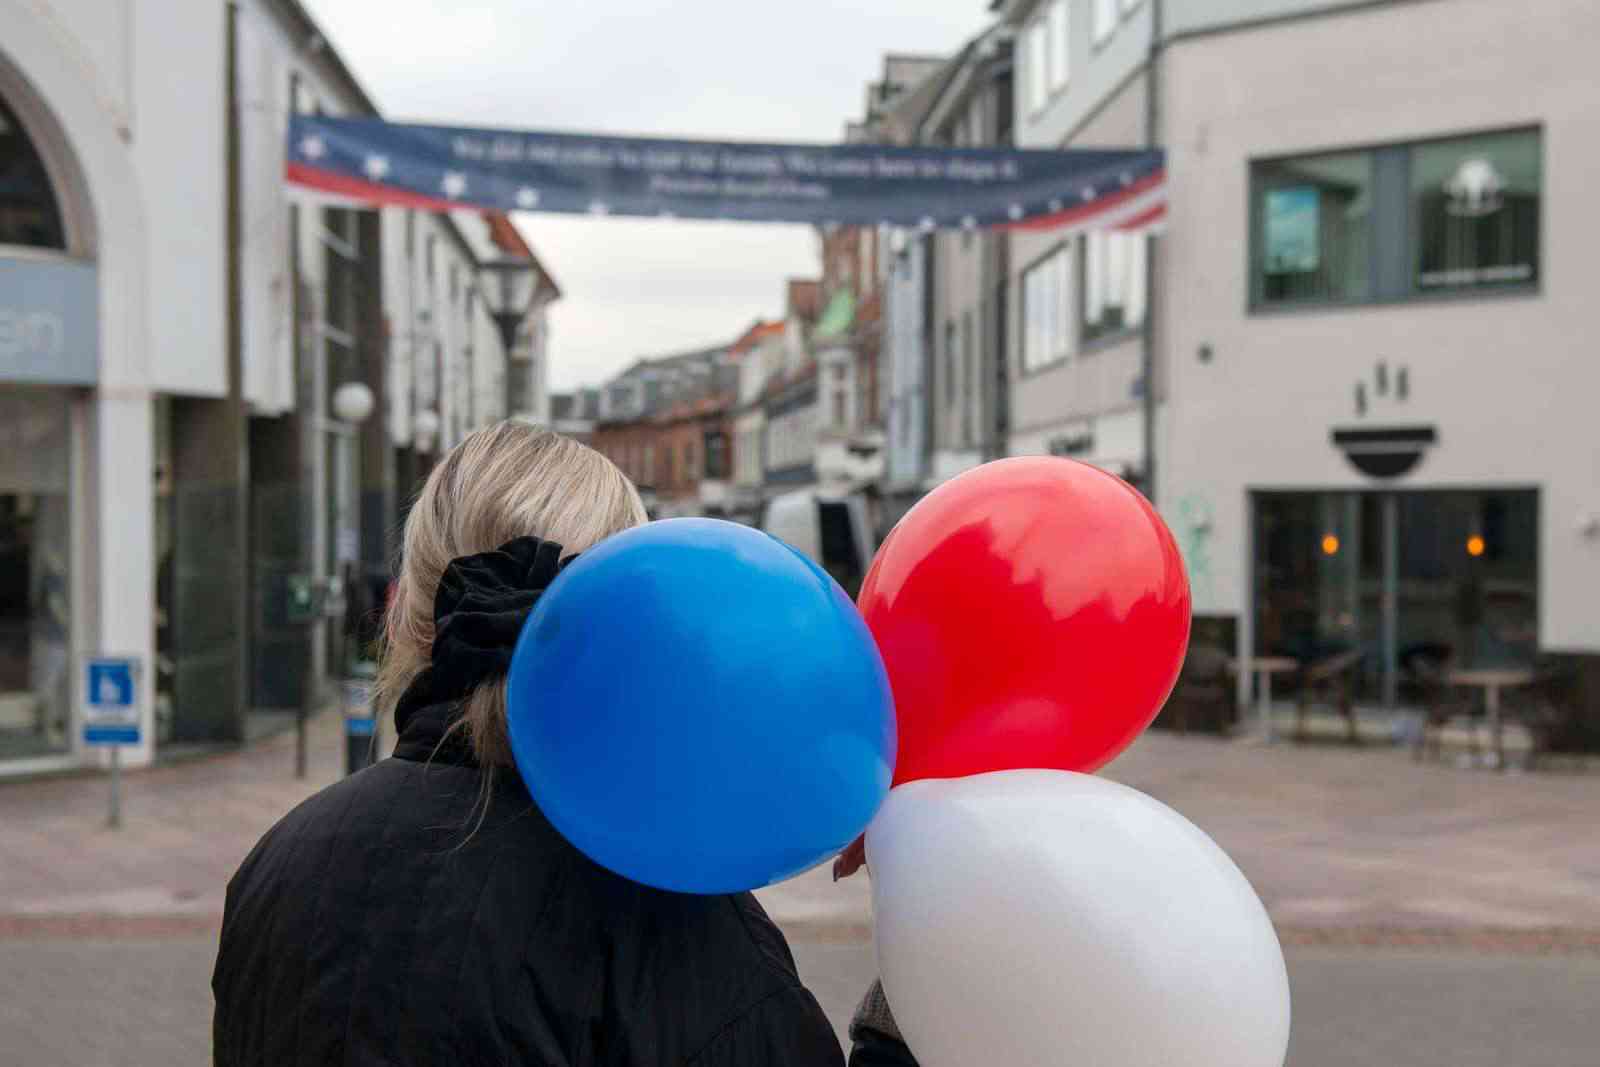 Gaden er pyntet med balloner og bannere. Fotograf Christian Lindgren